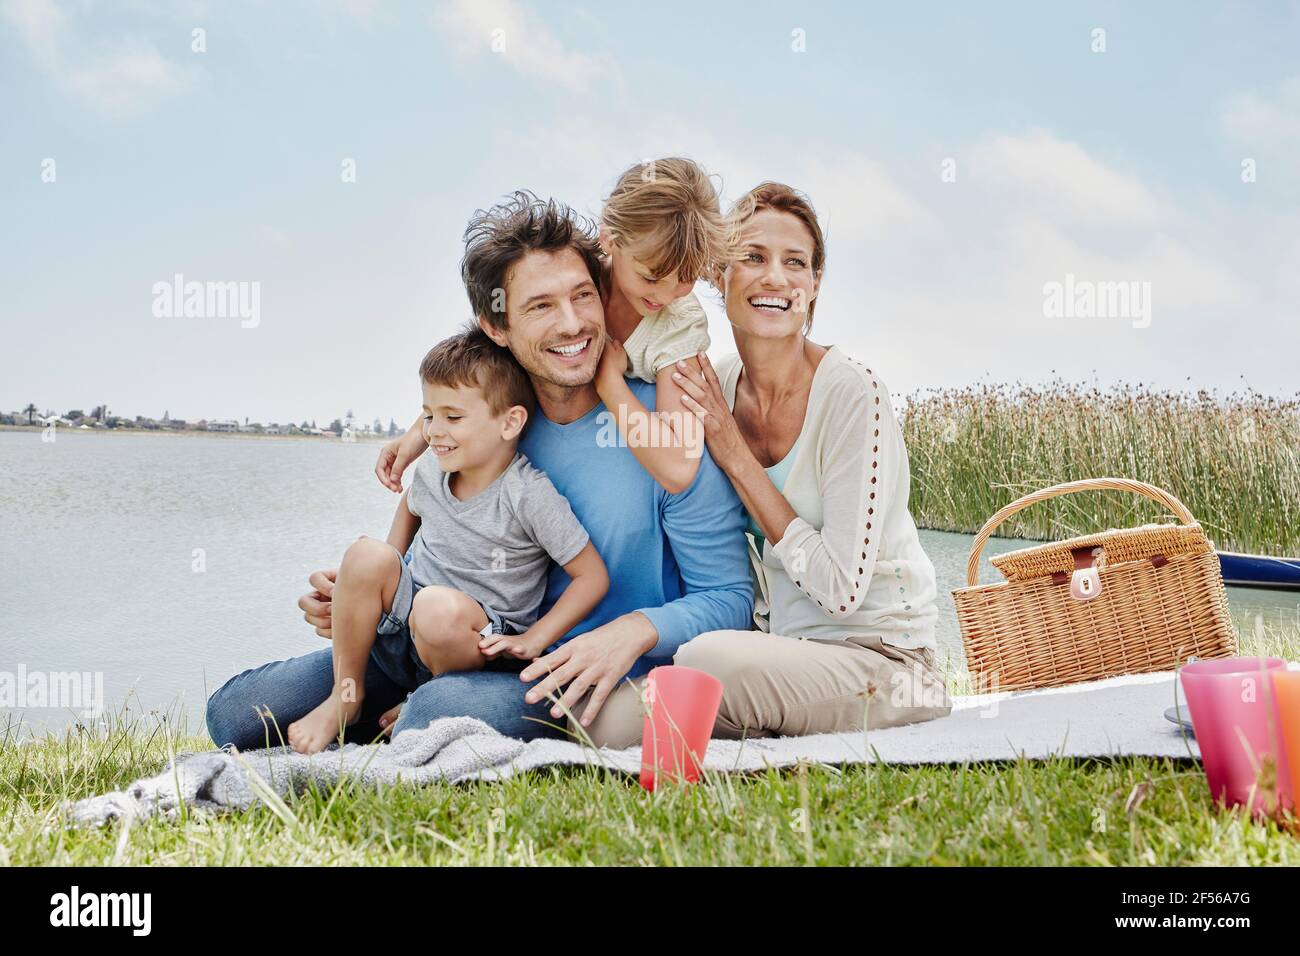 Famille heureuse assise dans une ligne sur une couverture au bord du lac Banque D'Images